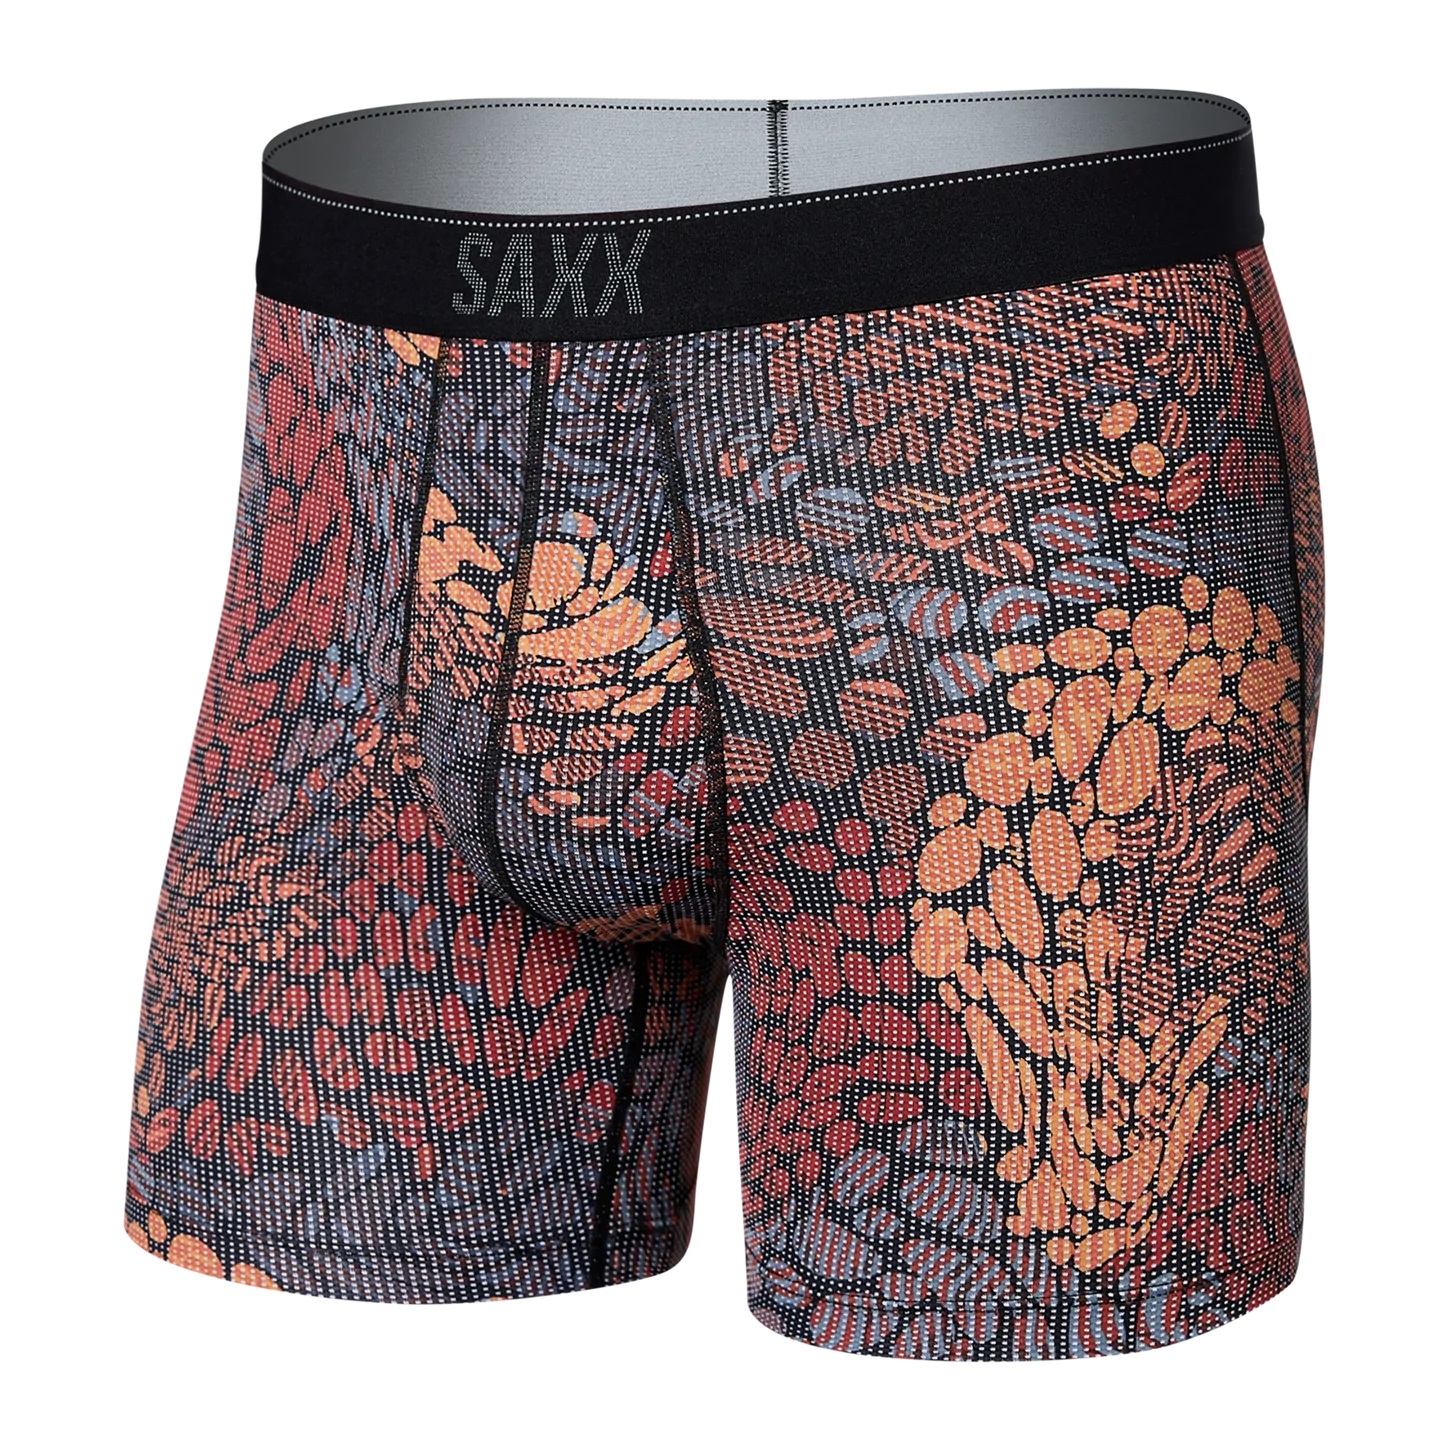 Saxx Quest : River Rock Camo Underwear